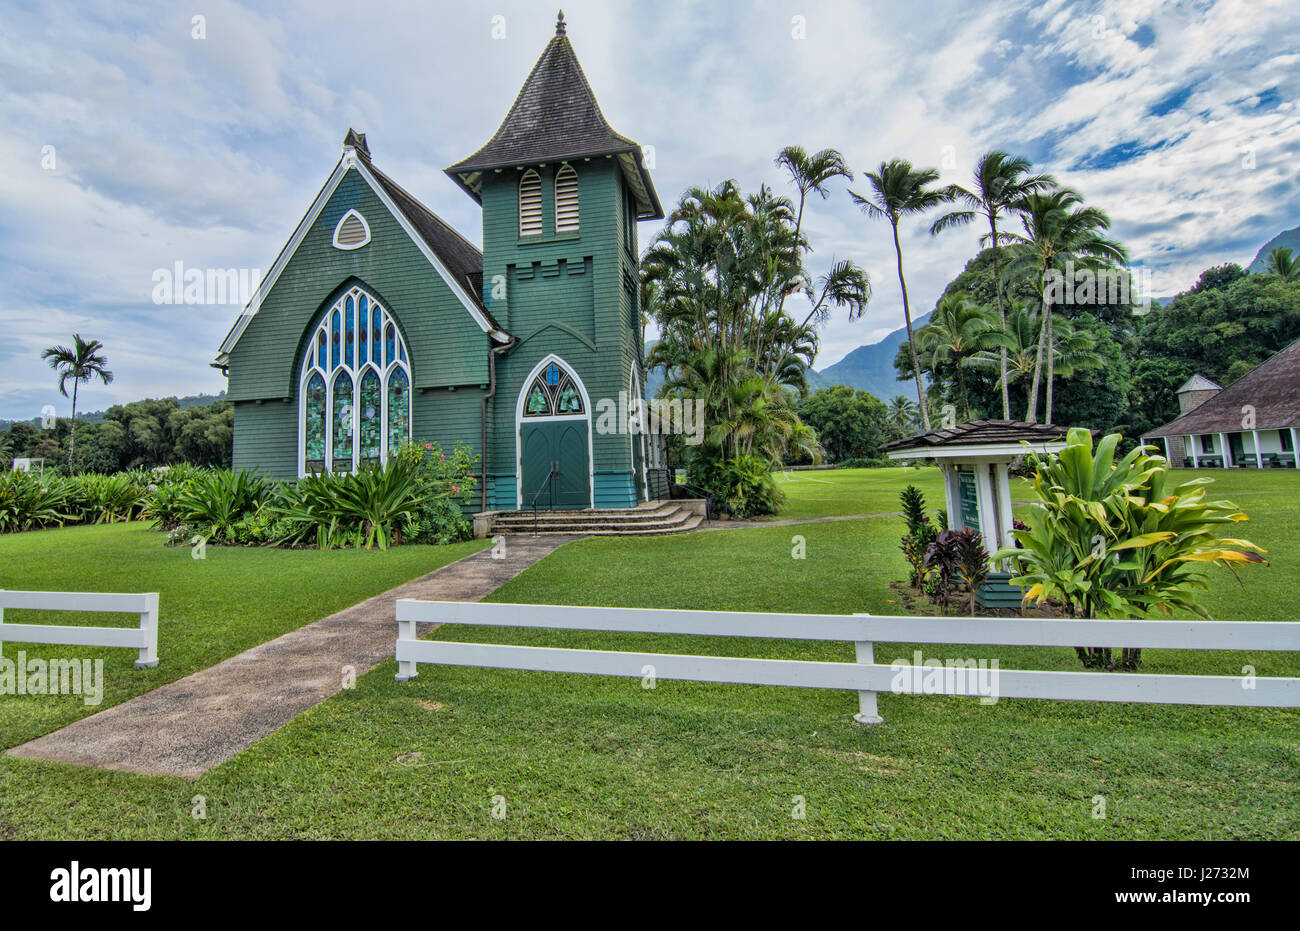 En Kauai Hawaii Hanalei el viejo verde iglesia llamada Iglesia Huiia Waiola 1912 atracción turística landmark Foto de stock